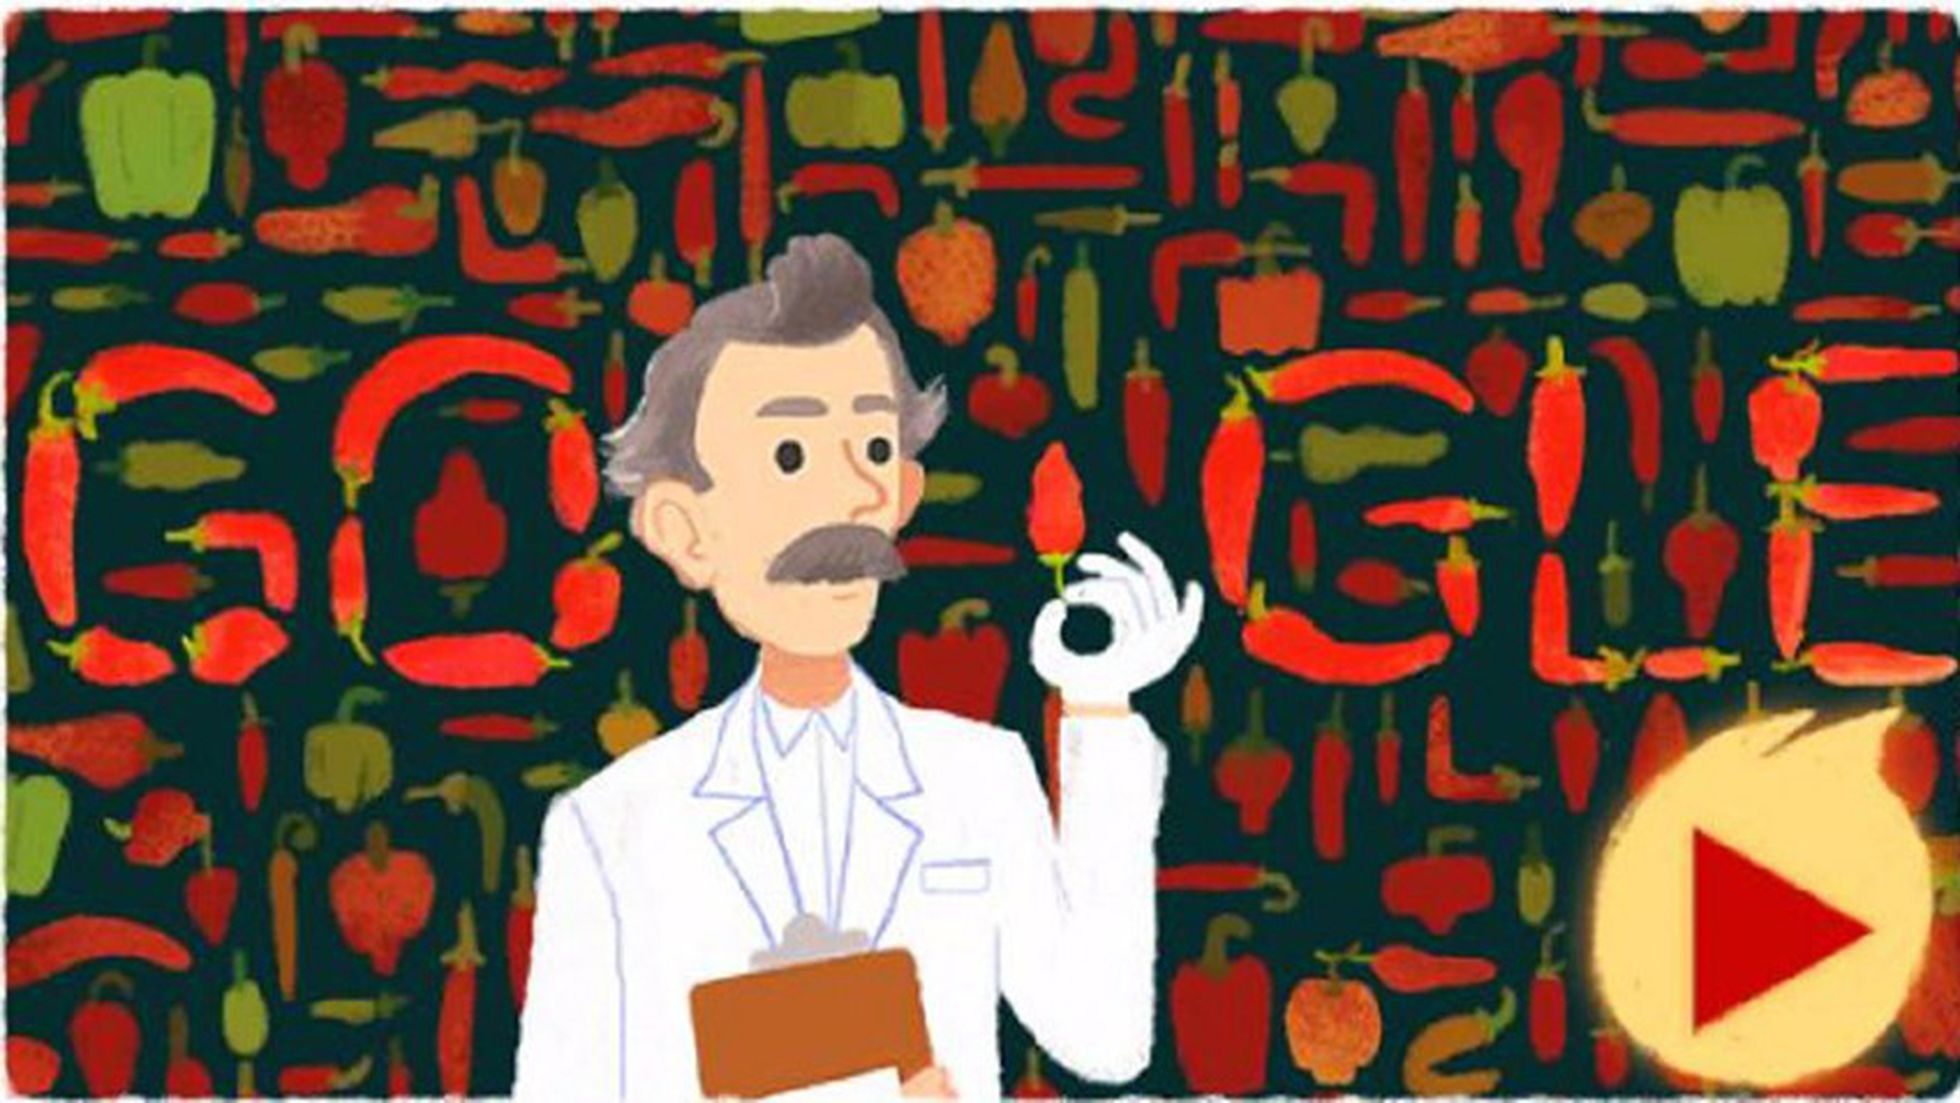 Wilbur Scoville, pai da 'escala quente', homenageado com doodle do Google, Tecnologia